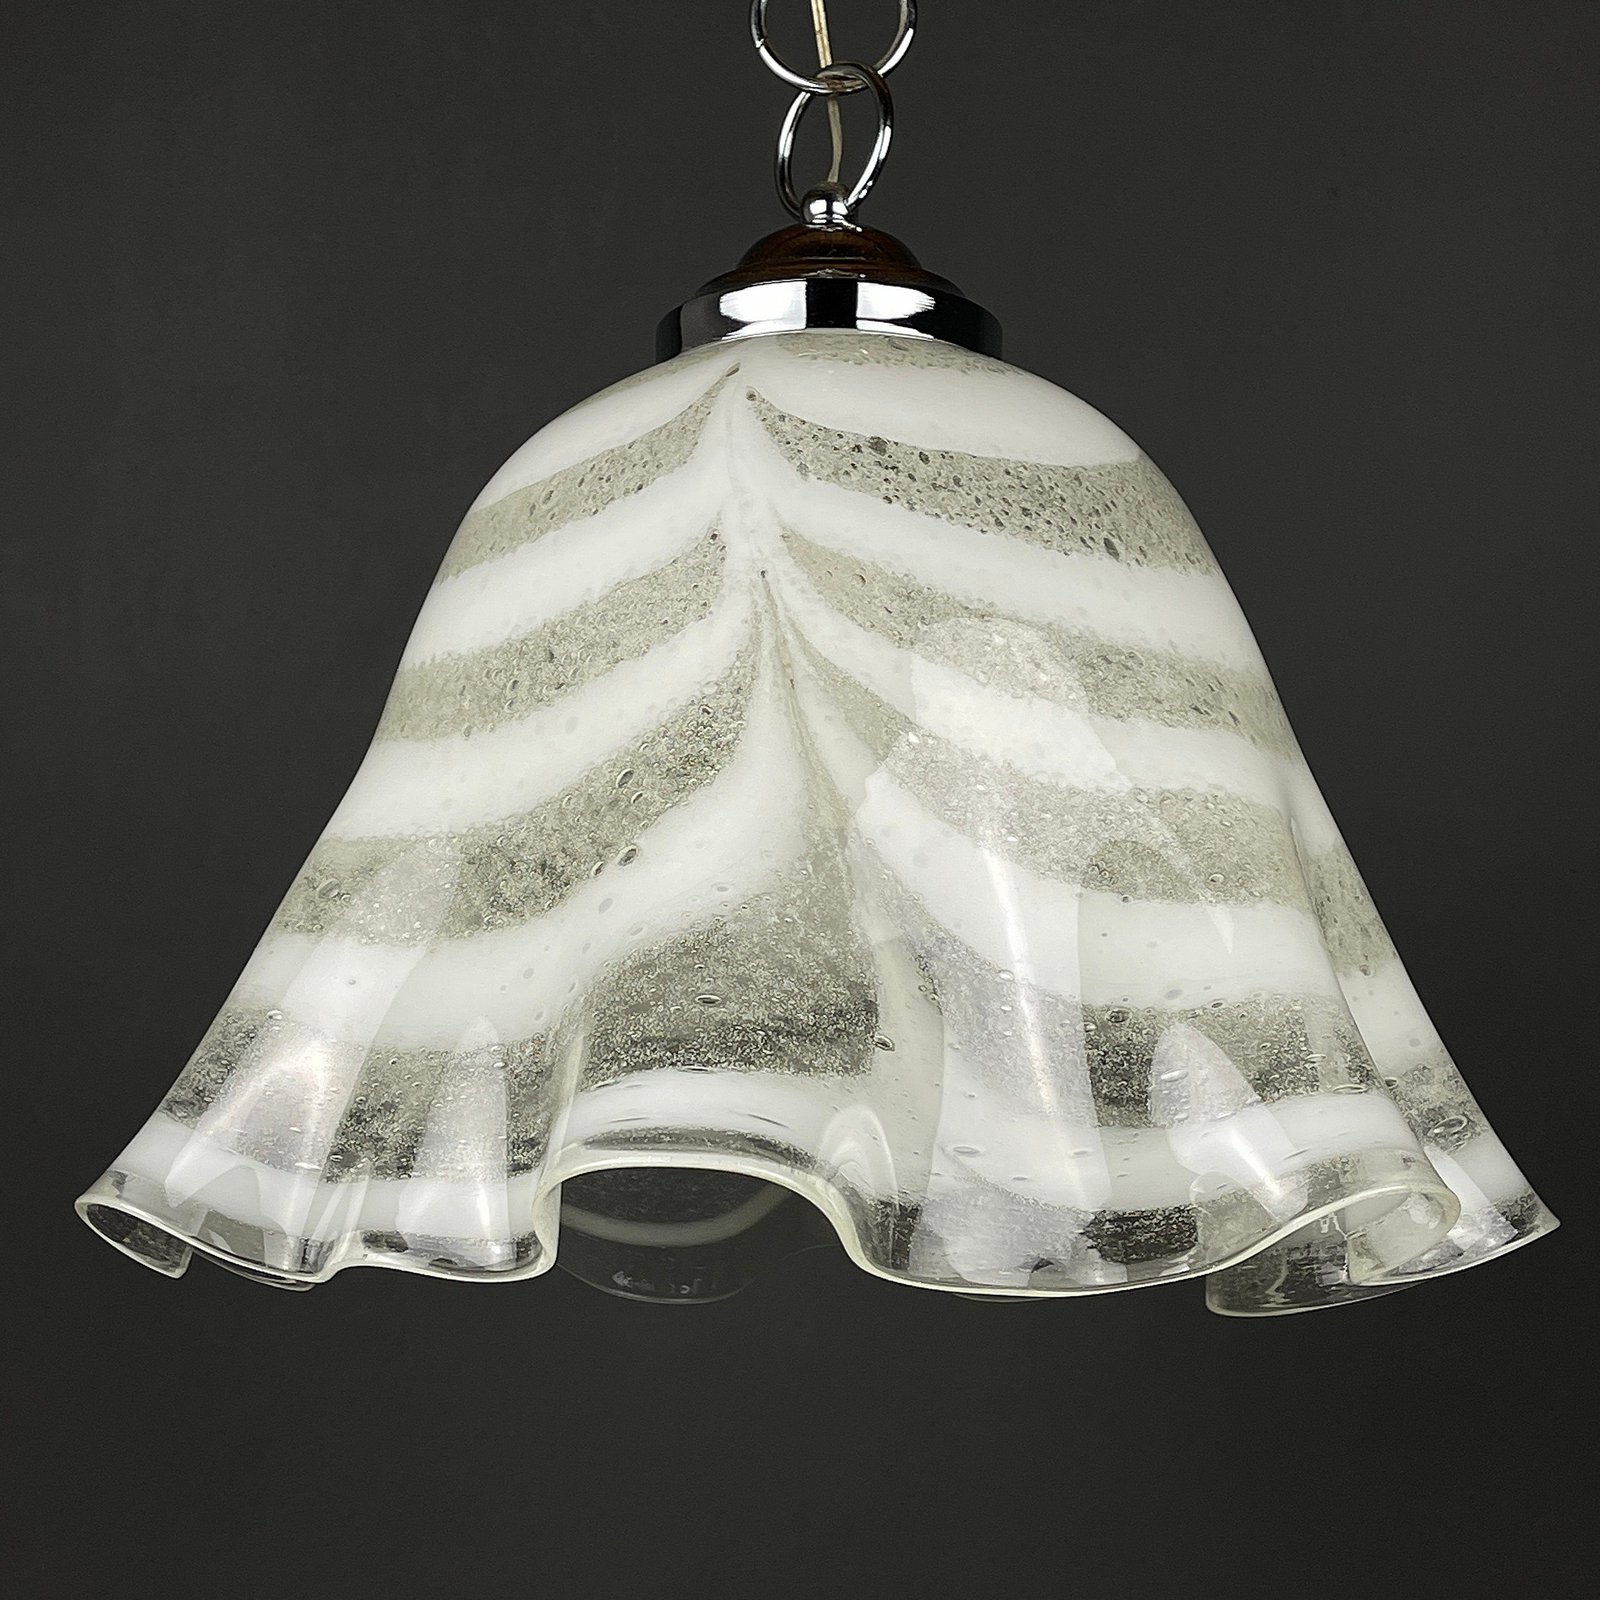 Murano glass pendant lamp Fazzoletto Italy 1970s Mid-century lighting Retro home decor white lamp